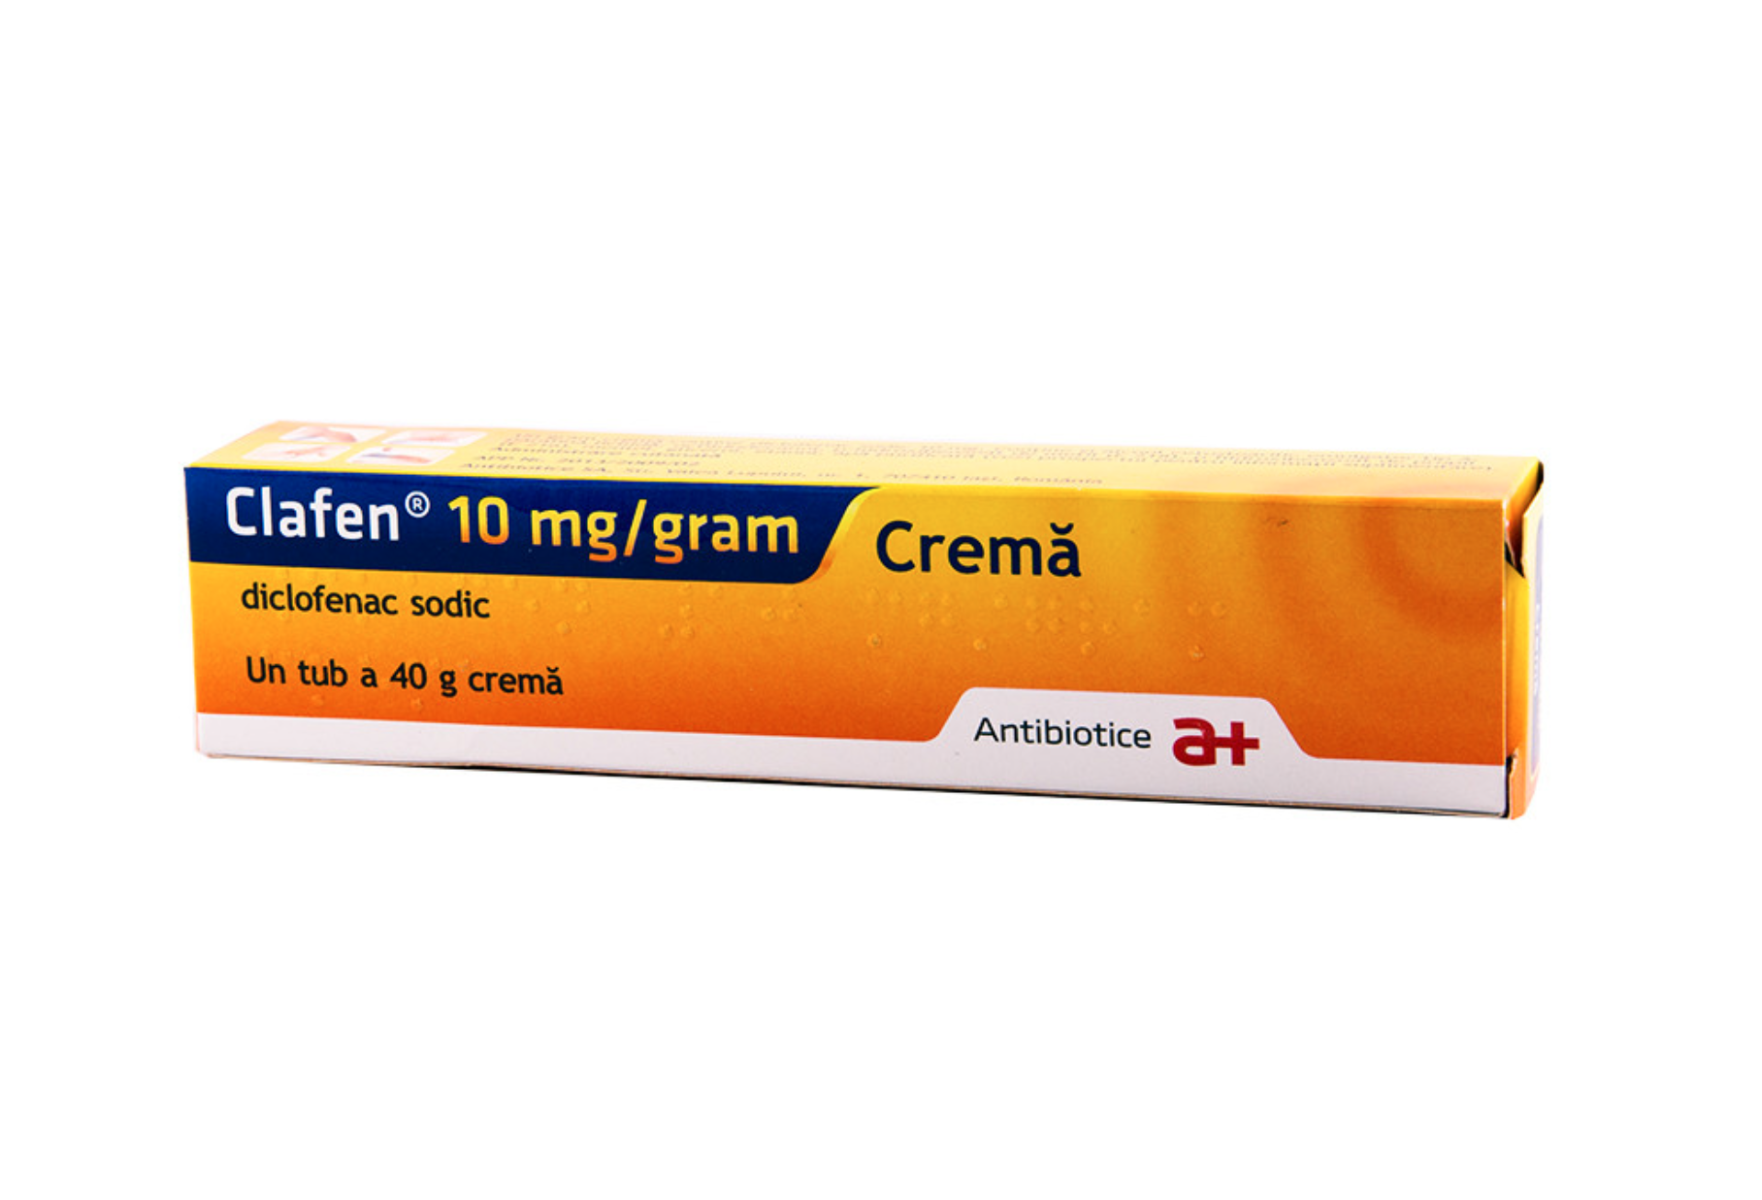 Dureri musculare - Clafen® 10 mg/gram, crema 40g, Antibiotice, sinapis.ro